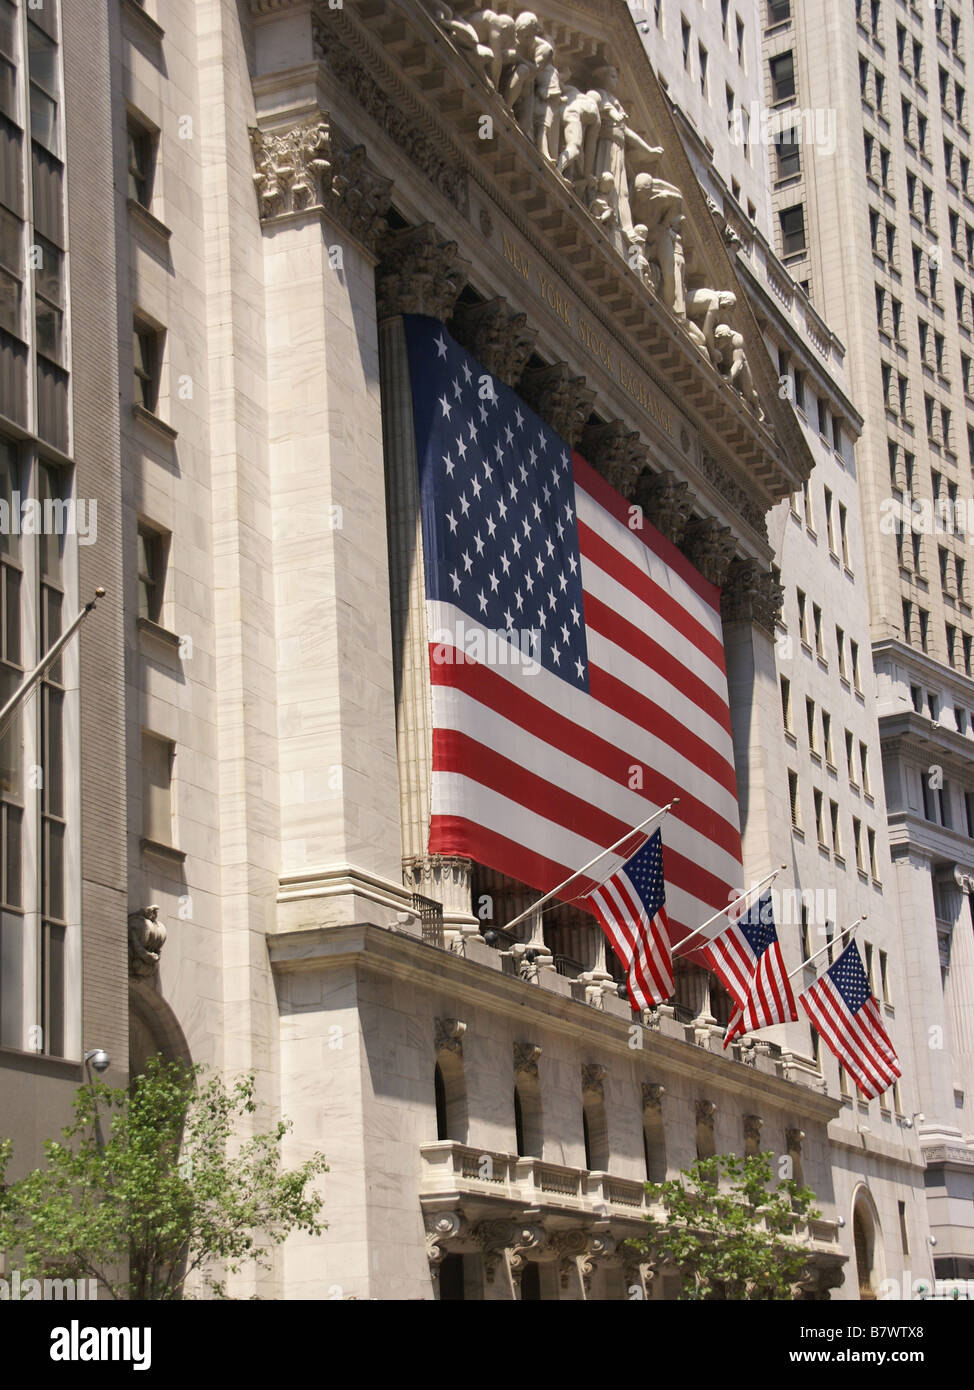 New York Stock Exchange drapé de drapeaux américains quartier financier de Wall Street, New York City Banque D'Images